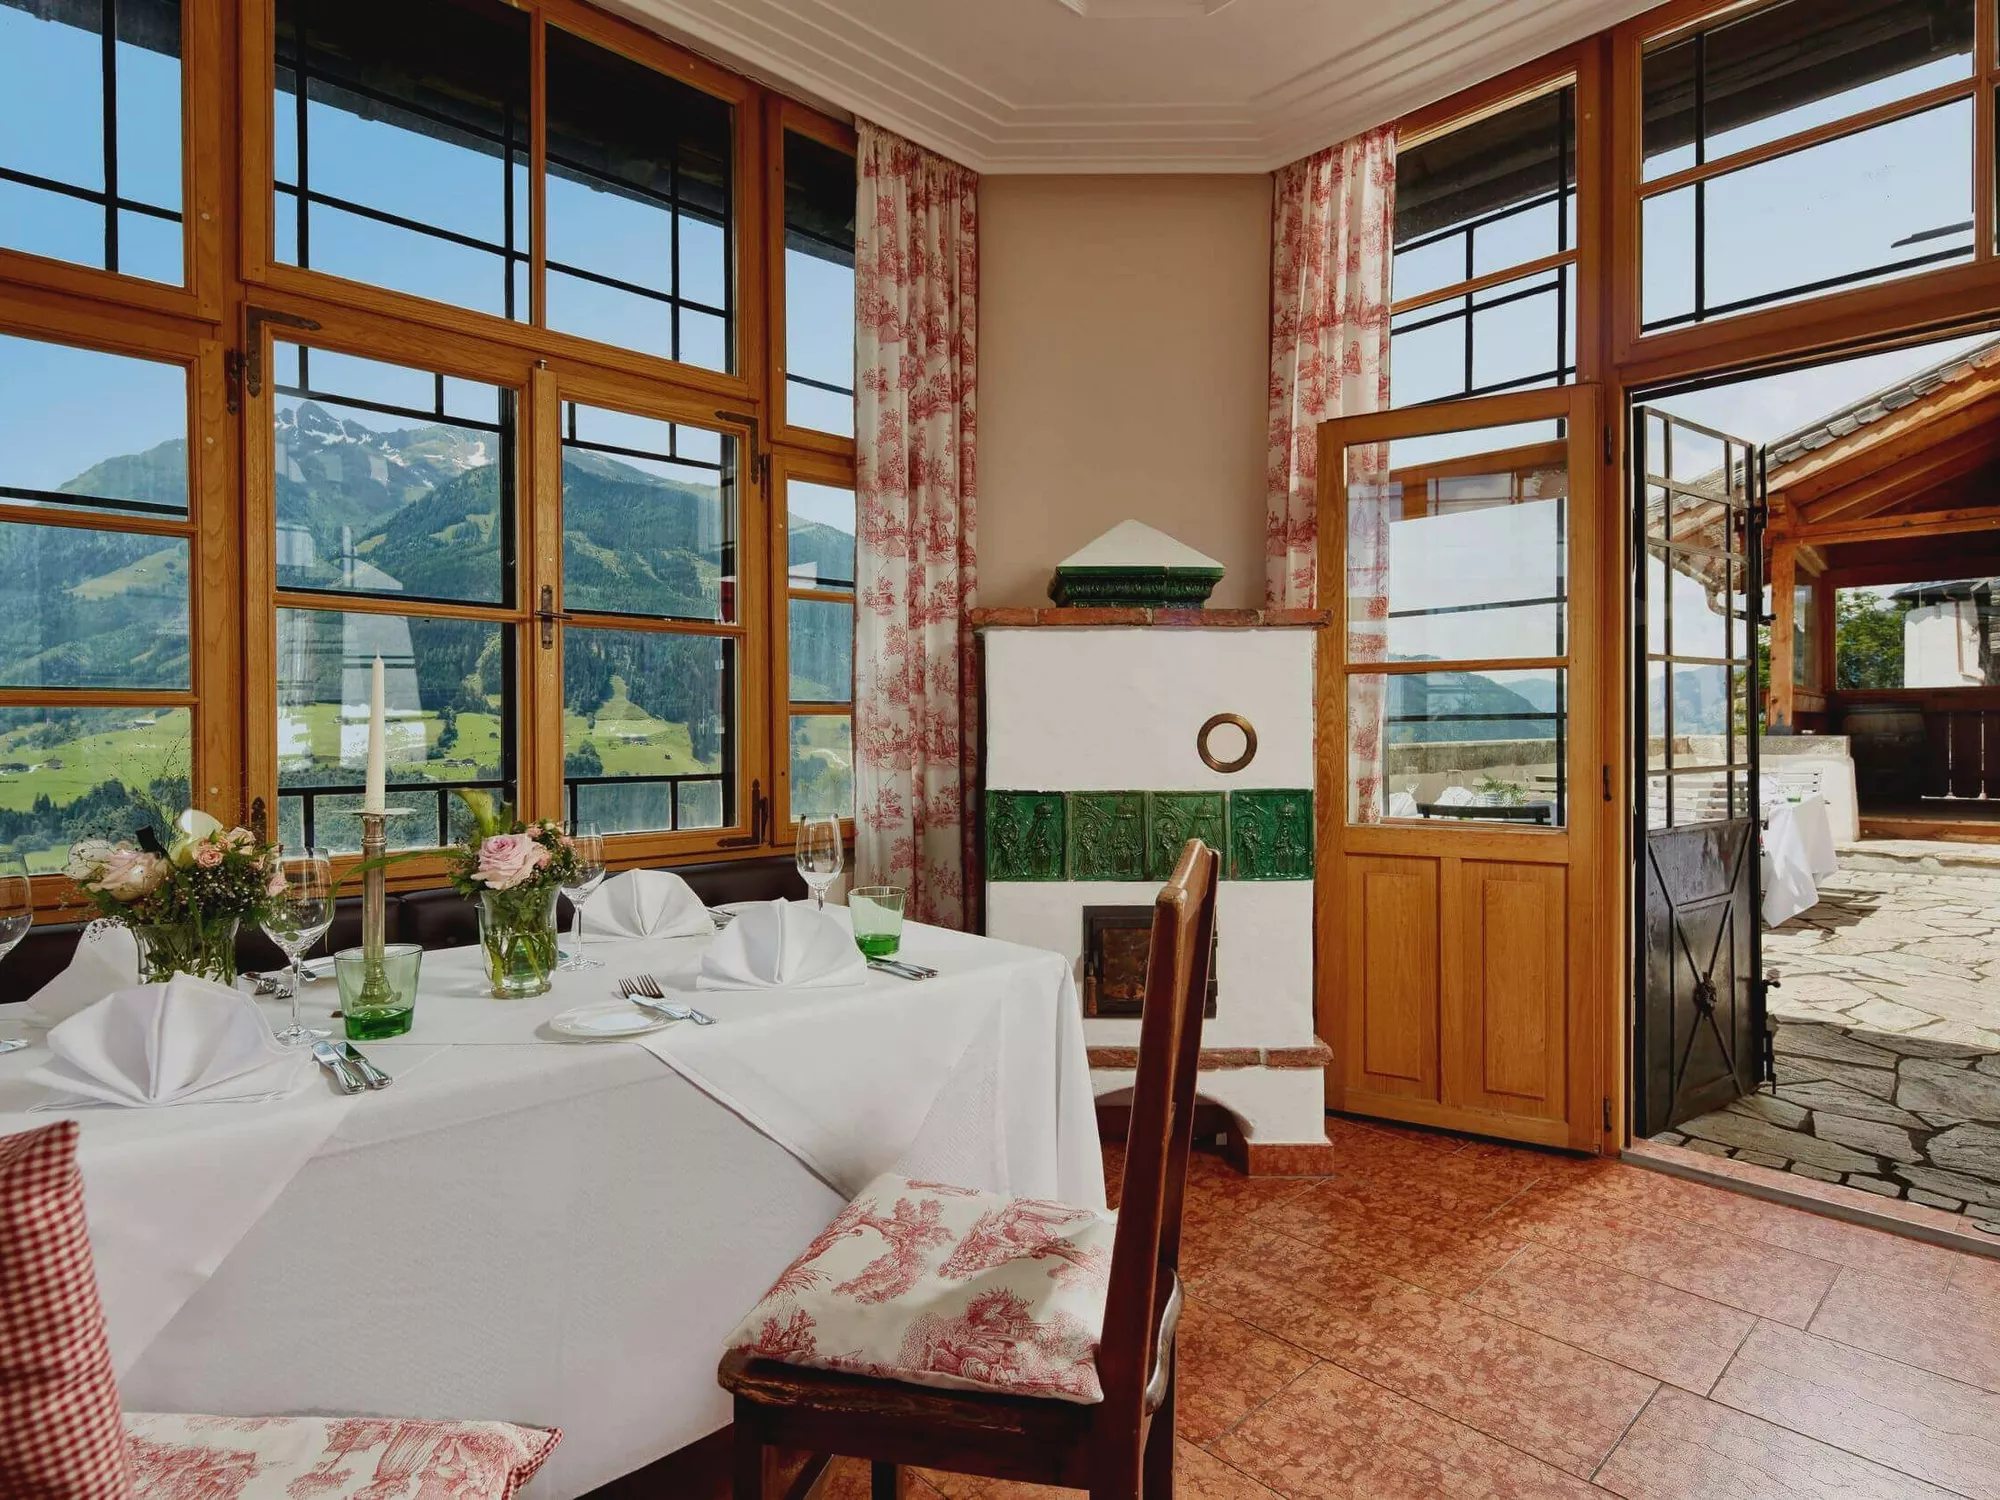 Gedeckte Tische im Restaurant Schloss Mittersill mit Ausblick durch grosse Fenster auf die umliegenden Berge